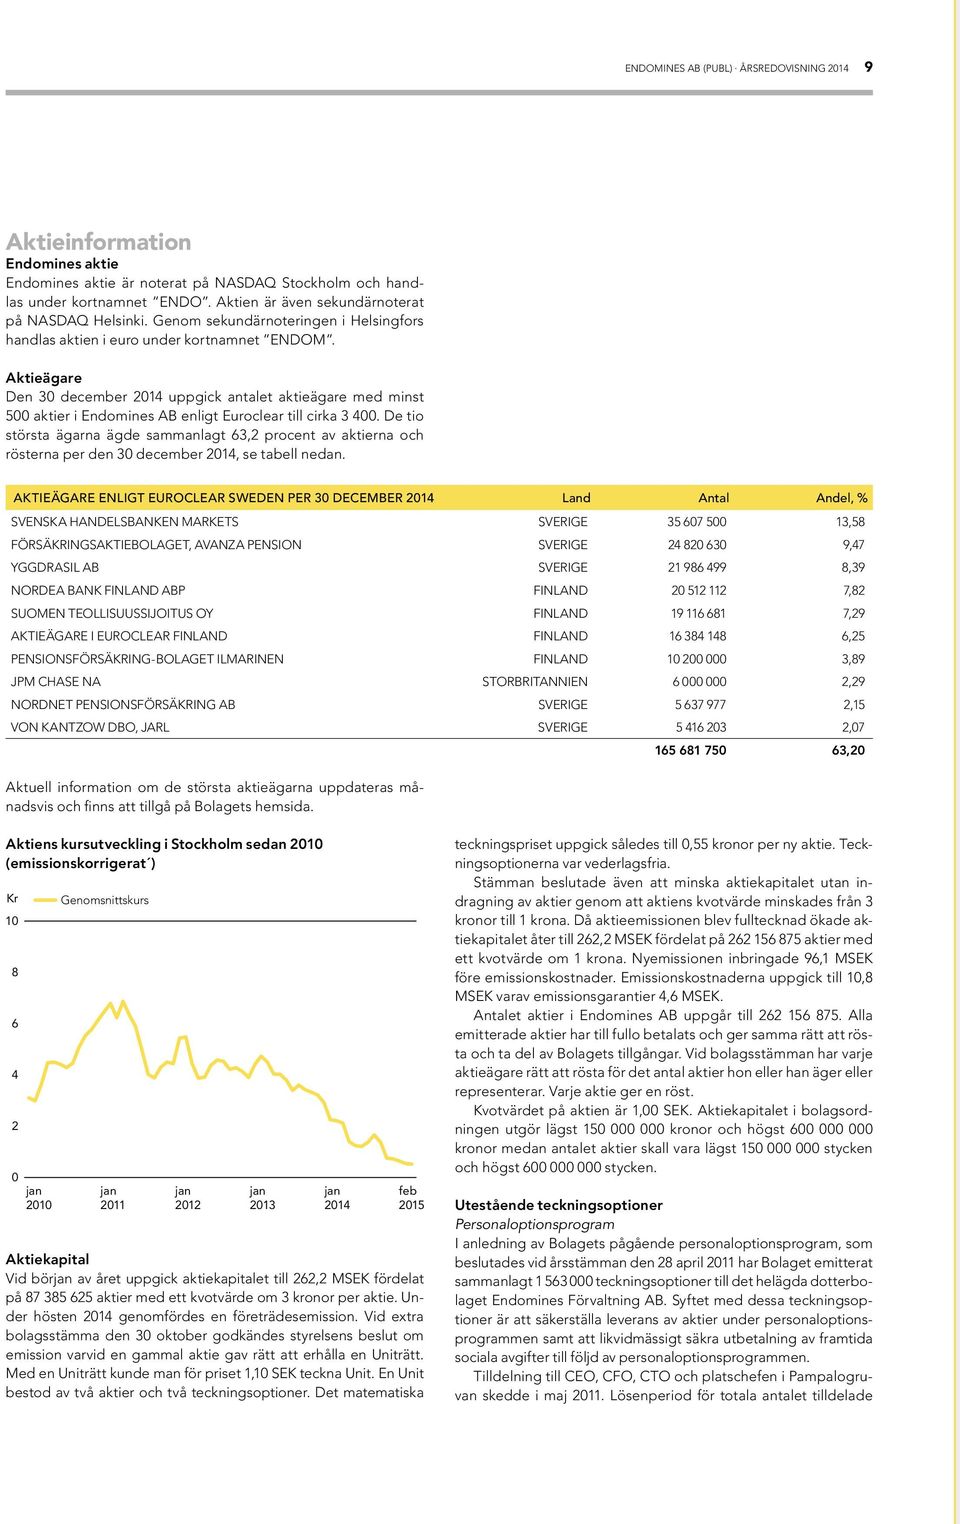 Aktieägare Den 30 december 2014 uppgick antalet aktieägare med minst 500 aktier i Endomines AB enligt Euroclear till cirka 3 400.